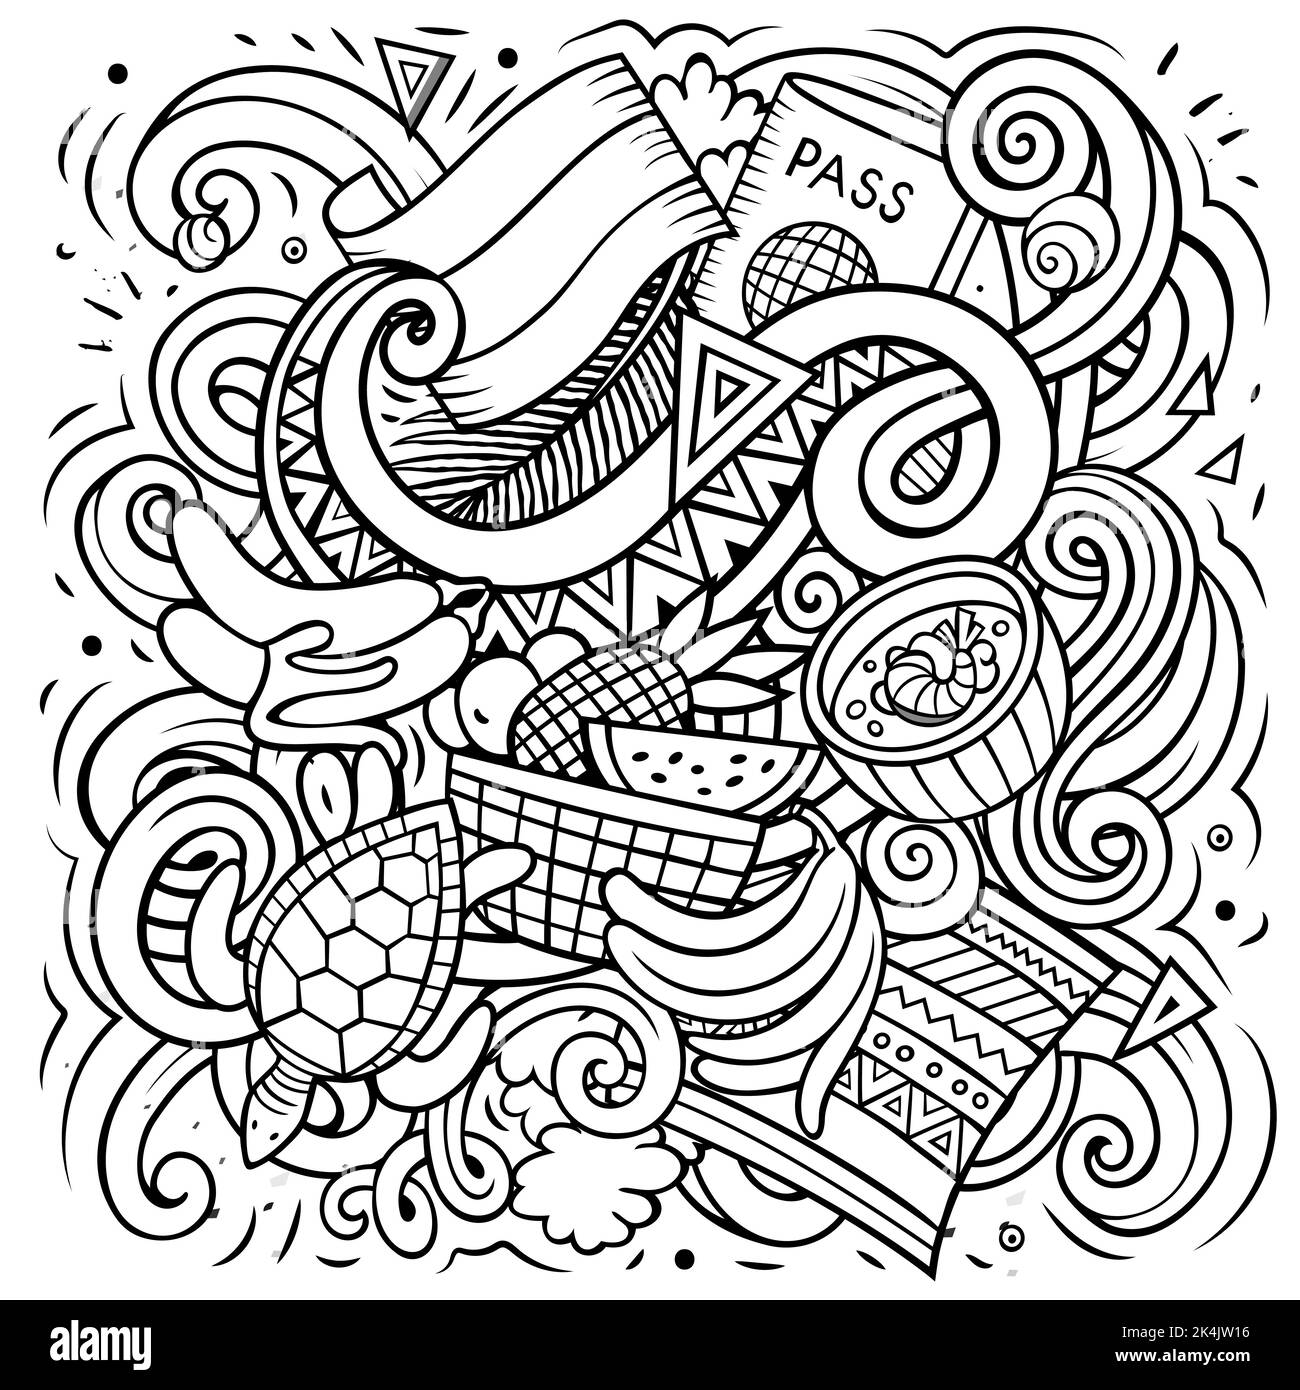 Ecuador disegno a mano fumetto doodles illustrazione. Design divertente. Illustrazione Vettoriale